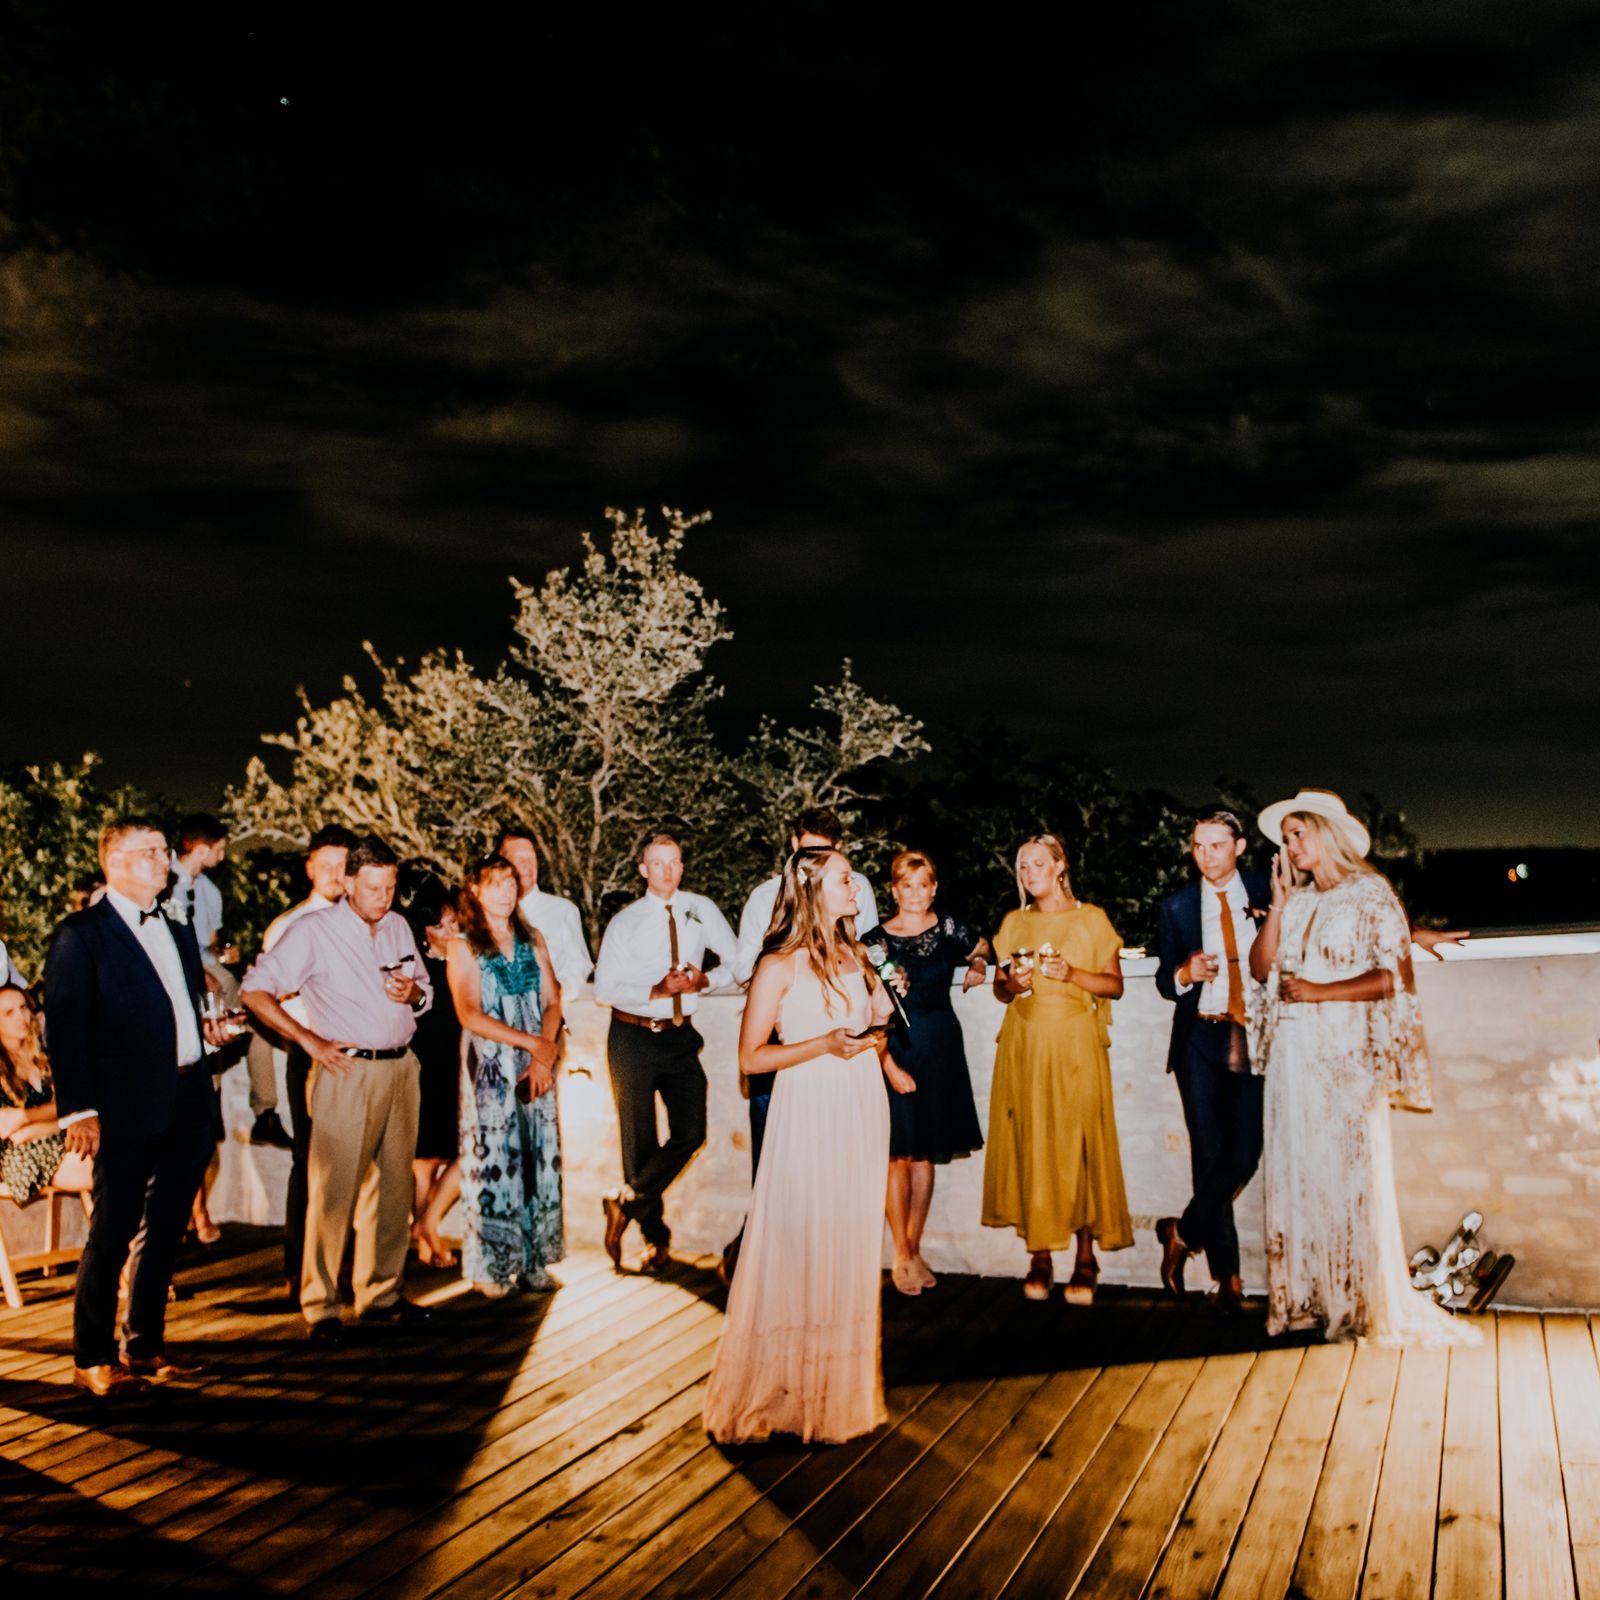 Texas Wedding Venue Rooftop Deck Reception